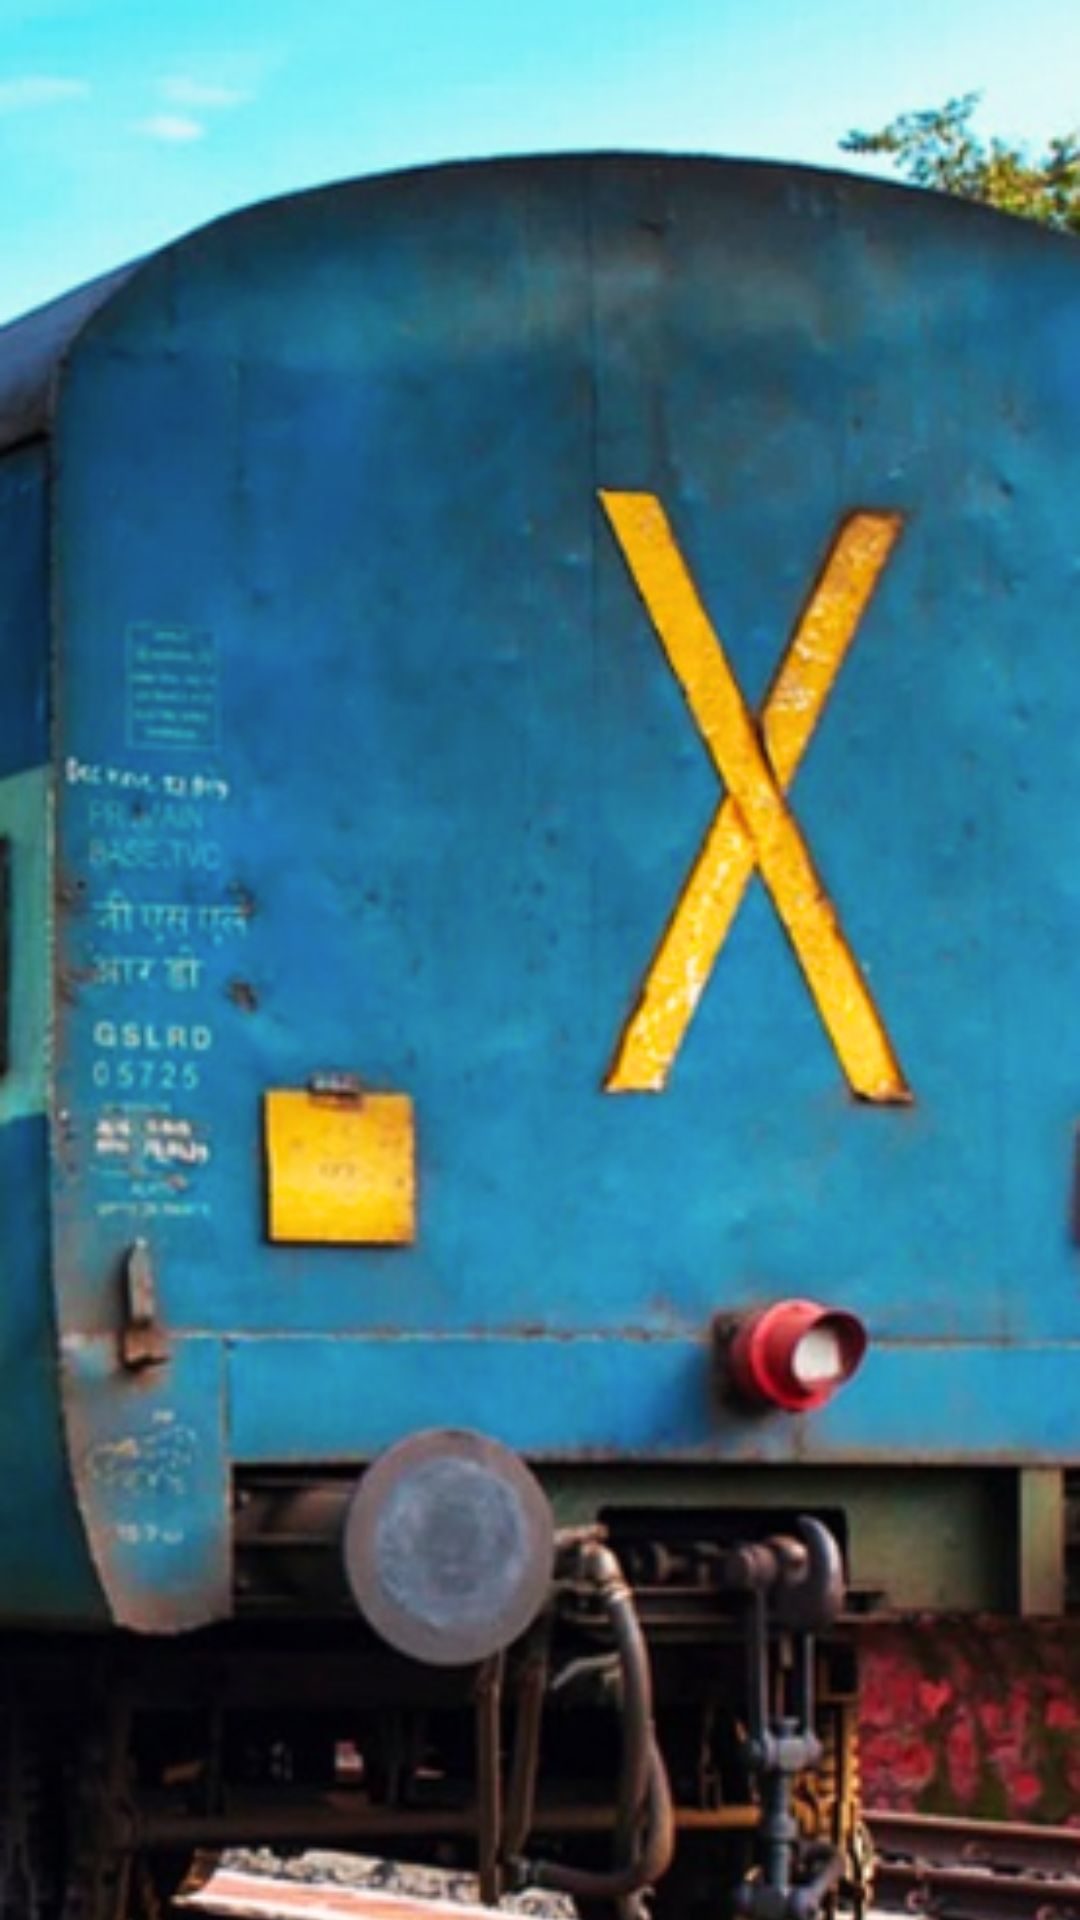 Train के आखिरी कोच पर क्यों बना होता है X निशान? 